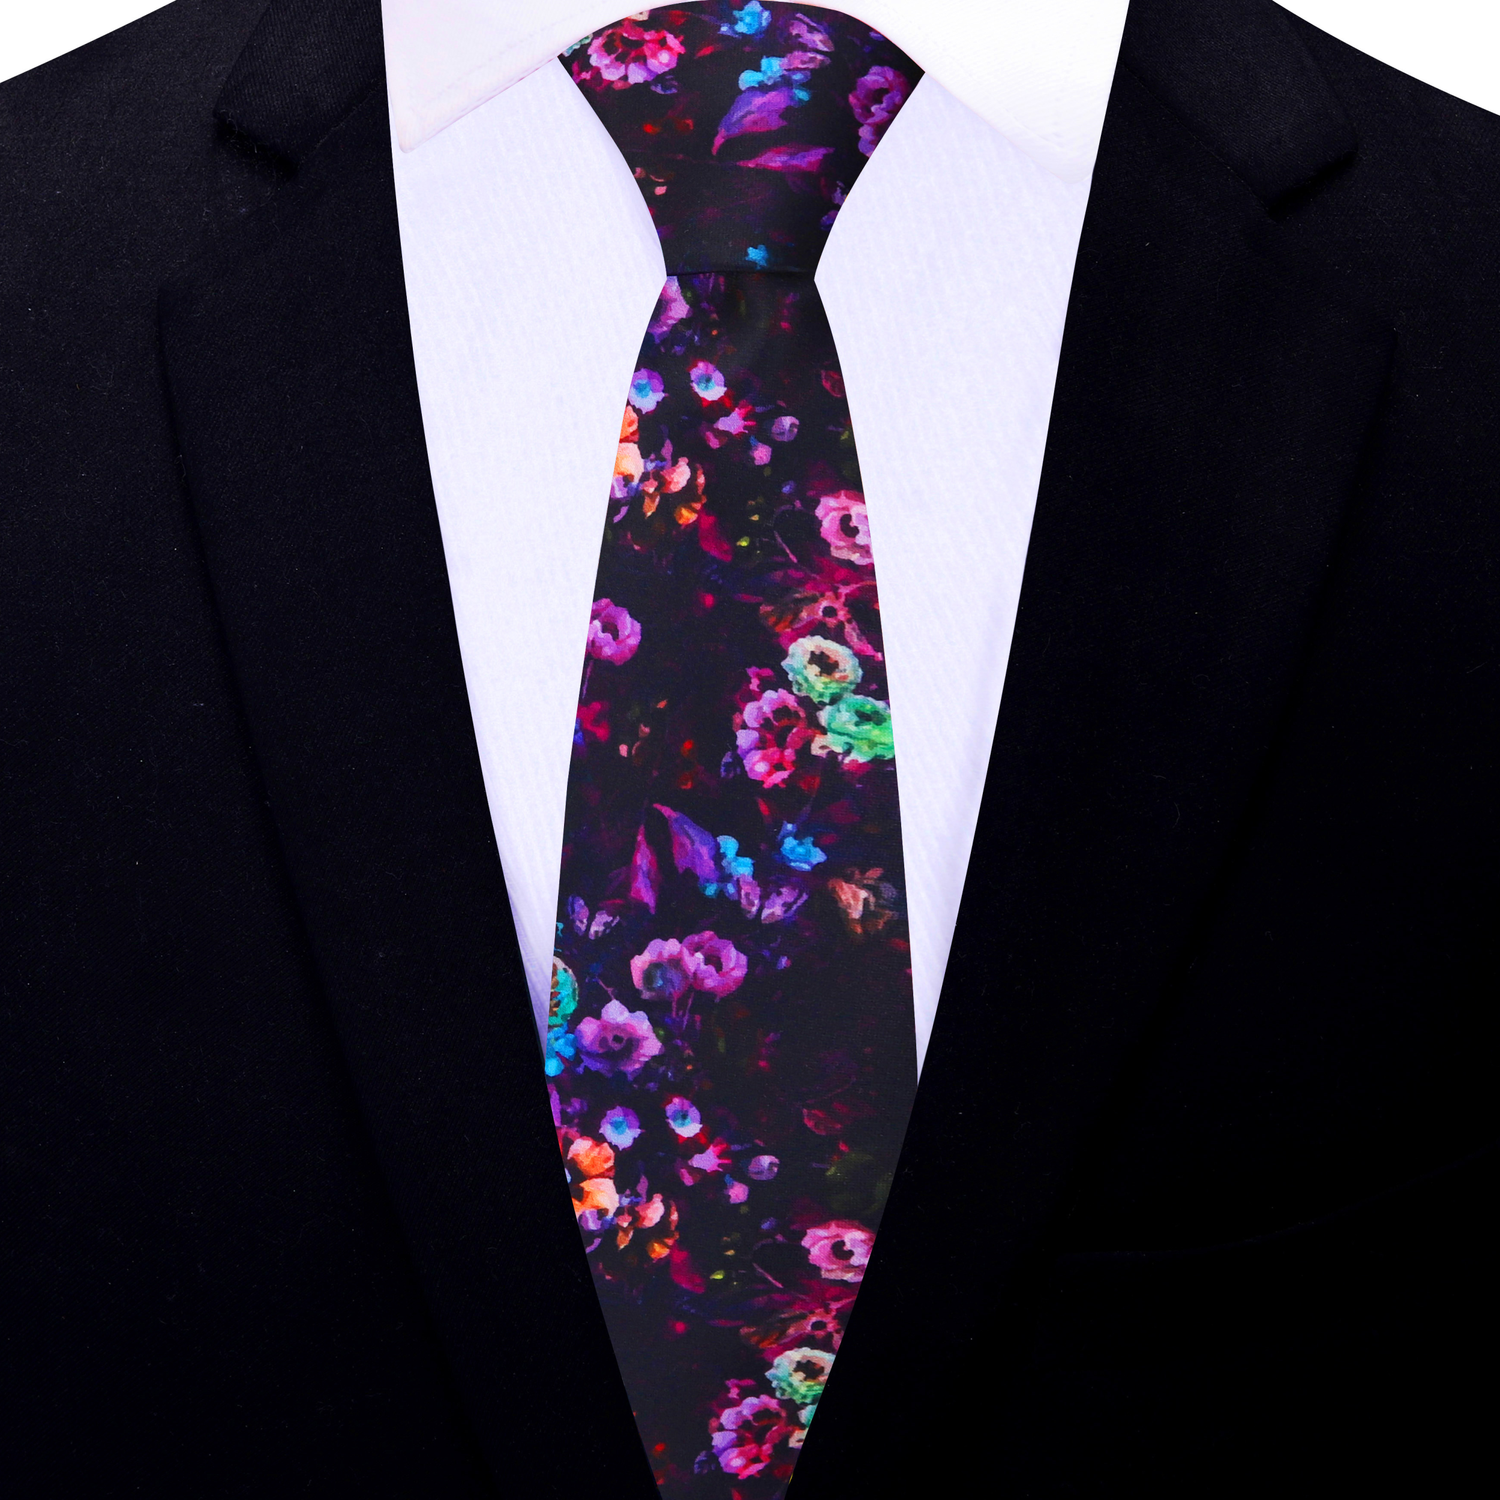 Thin Tie: Dark Wine, Punk, Orange, Purple Flowers Necktie